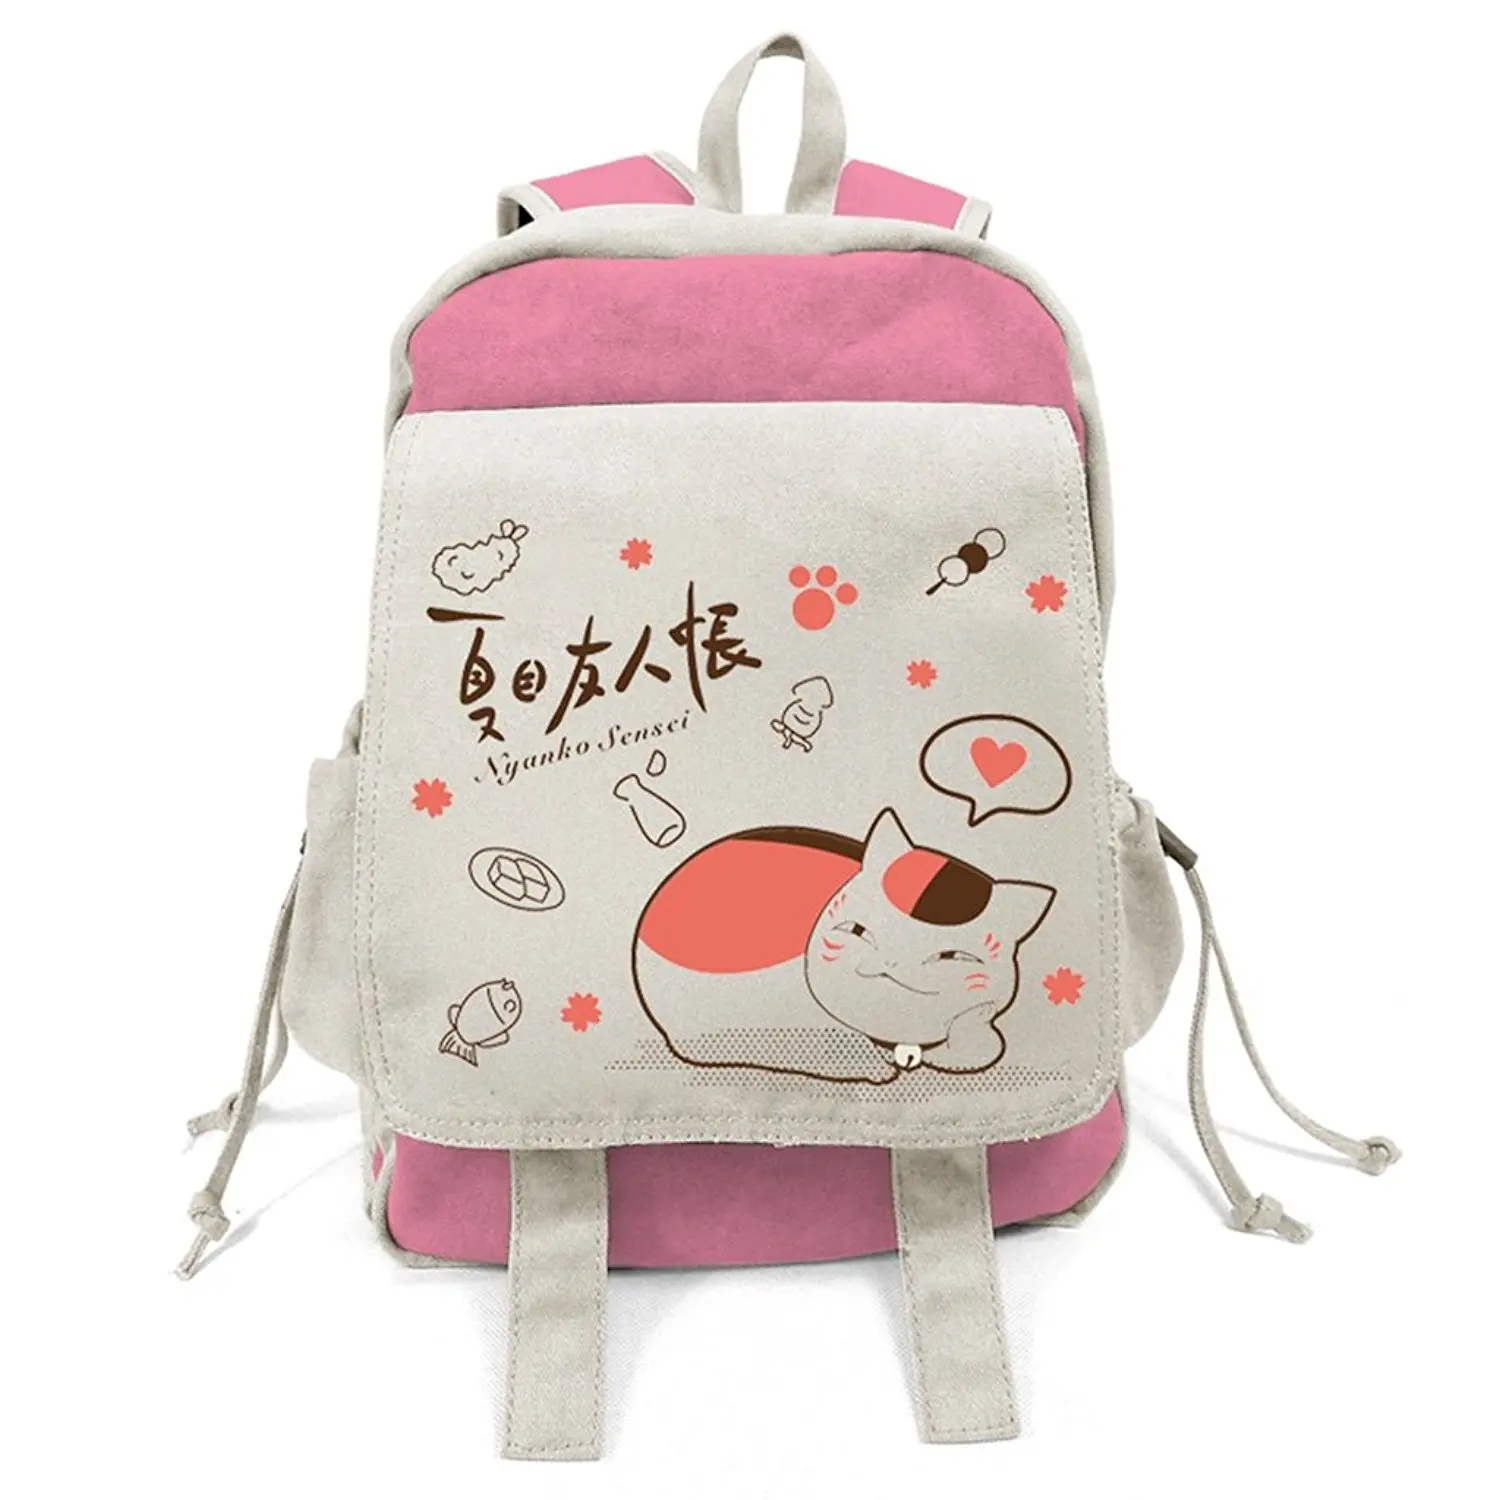 E.a@market Hot Anime Canvas Shoulders Bag Leisure Laptop Bag